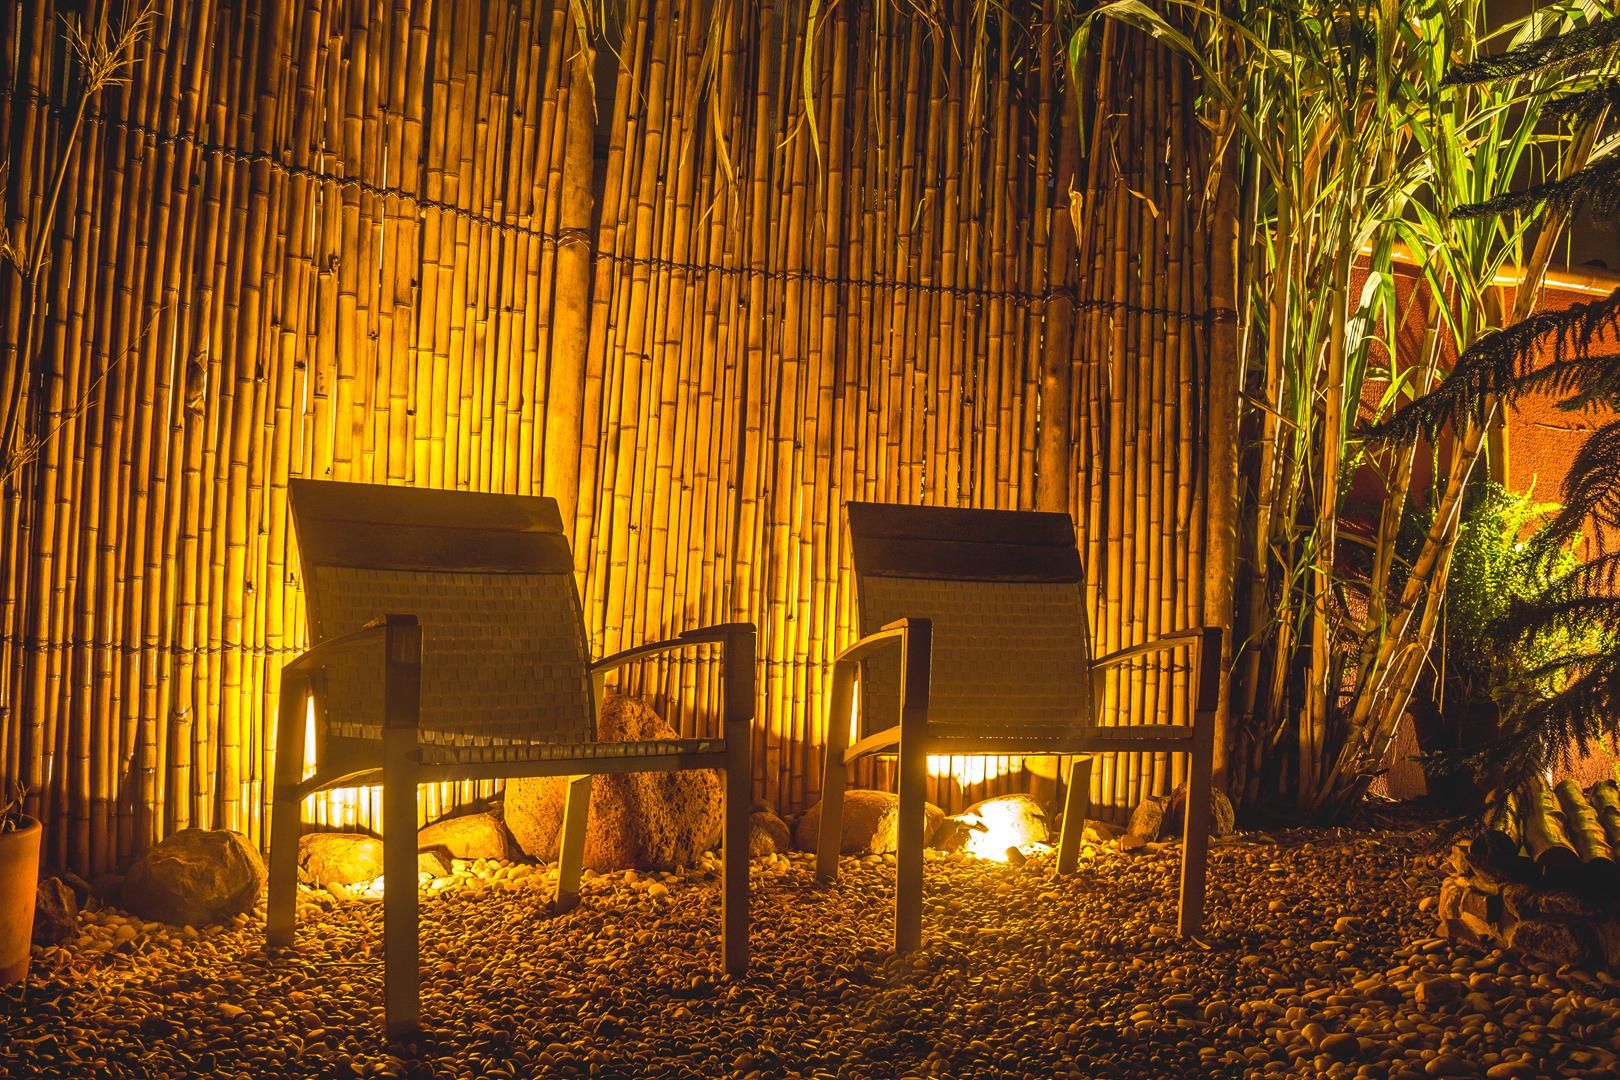 Painel de bambu Bambusa- Bioarquitetura Jardins modernos Bambu Ambar/dourado sustentabilidade, bioarquitetura, biopaisagismo, paisagismo funcional, lagos, lagos natural, forros, coberturas, telhado verde, pergolado, pergolado coberto, bambu, bamboo, permacultura, biocontrução, bambuaria, jardim, jardim com lago, jardim ornamental, jardim japonês ,Cercas e muros